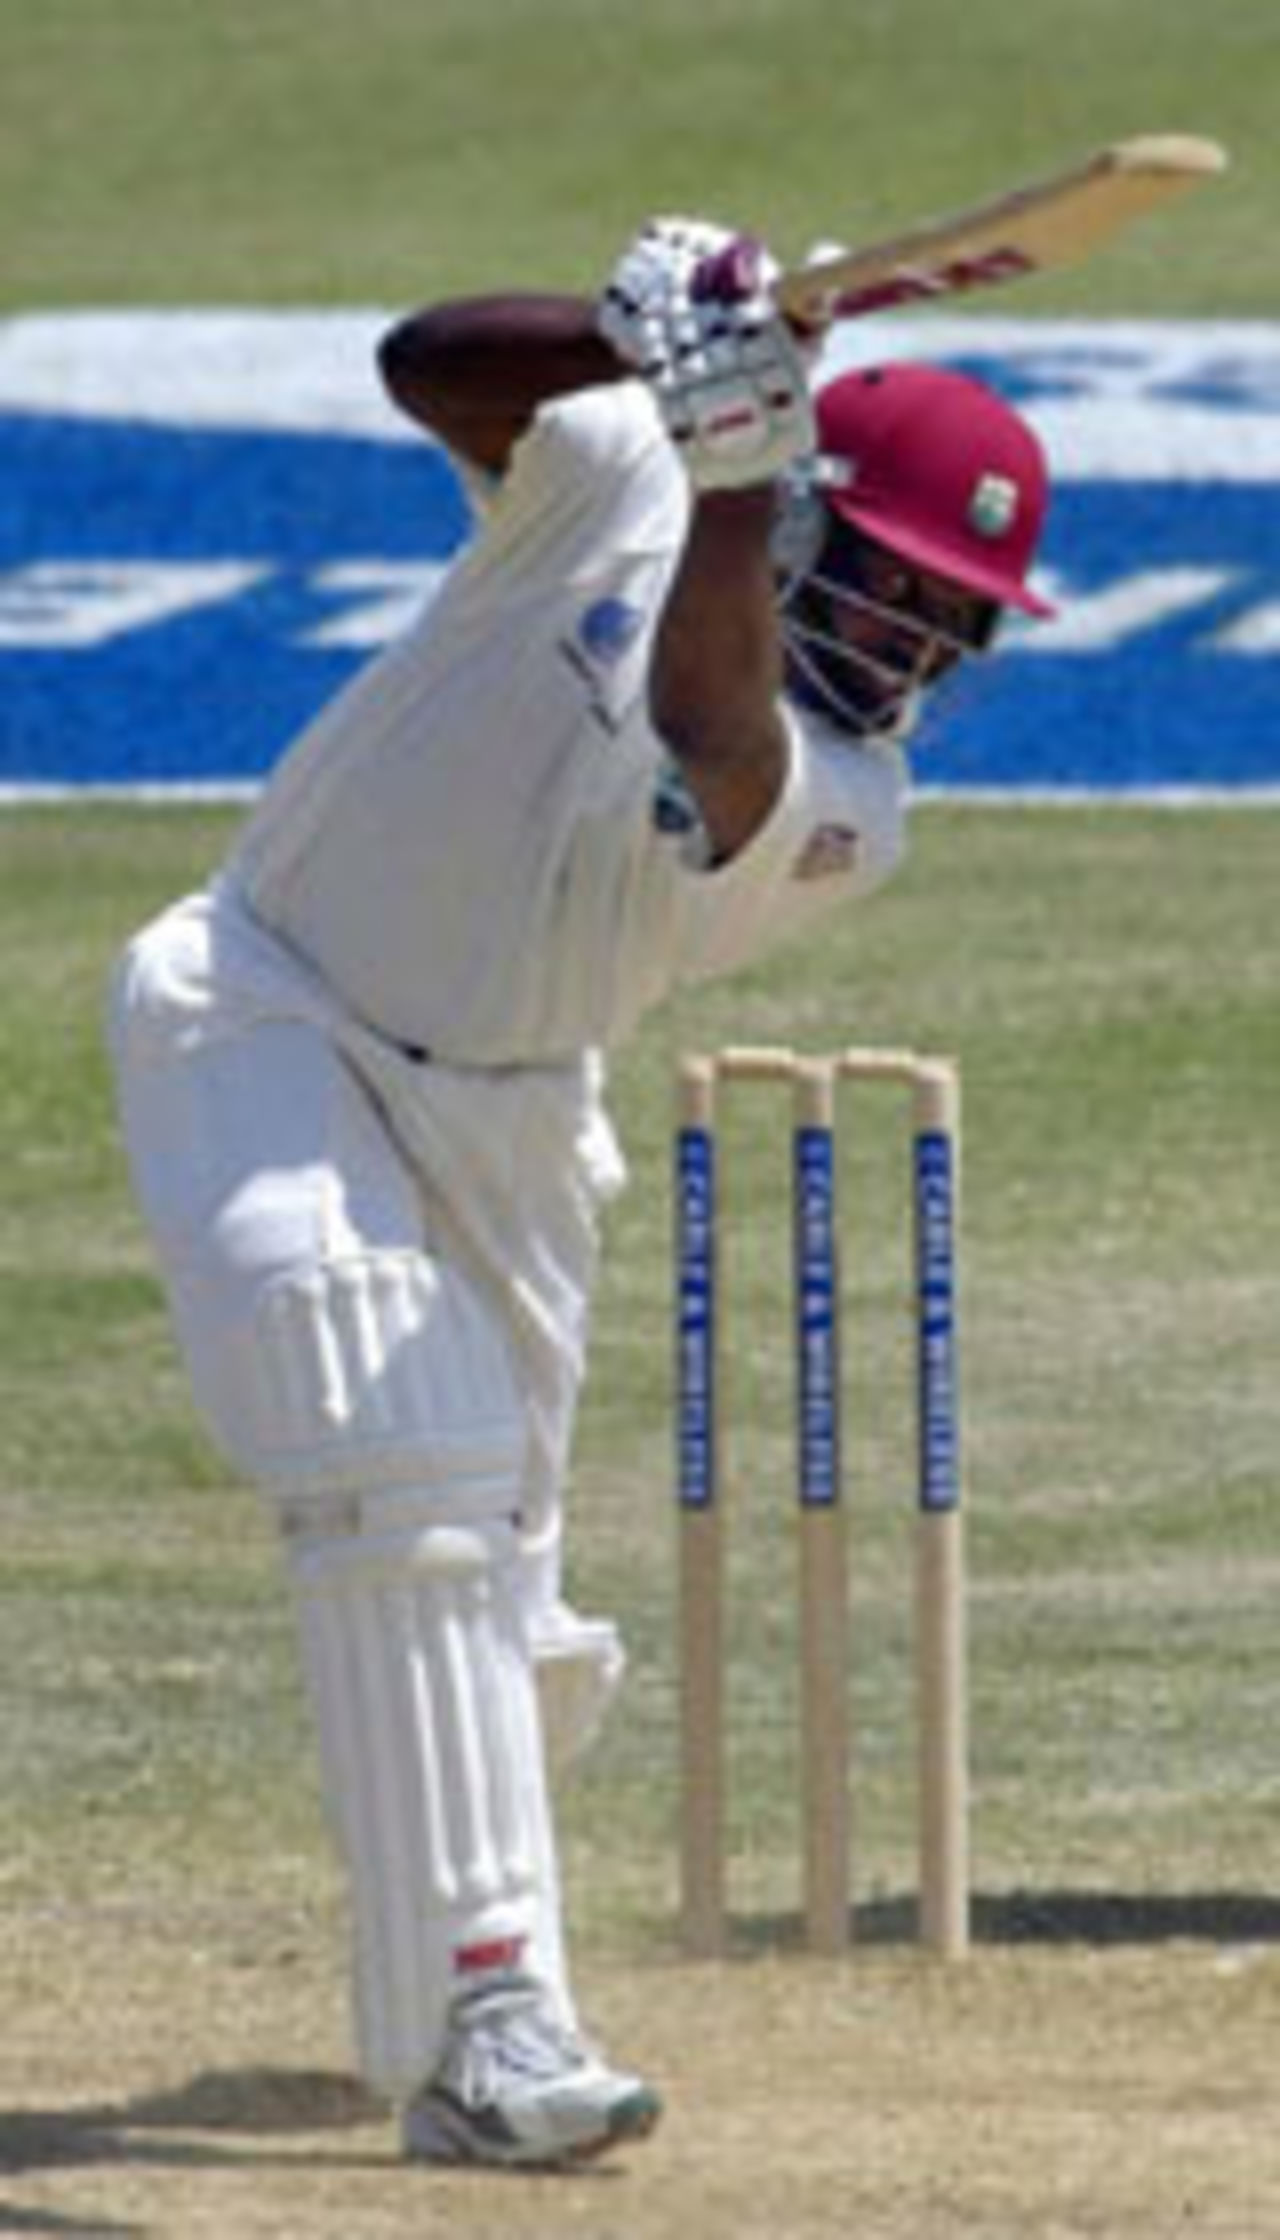 Brian Lara batting, West Indies v Sri Lanka, 2nd Test, Sabina Park, June 29, 2003